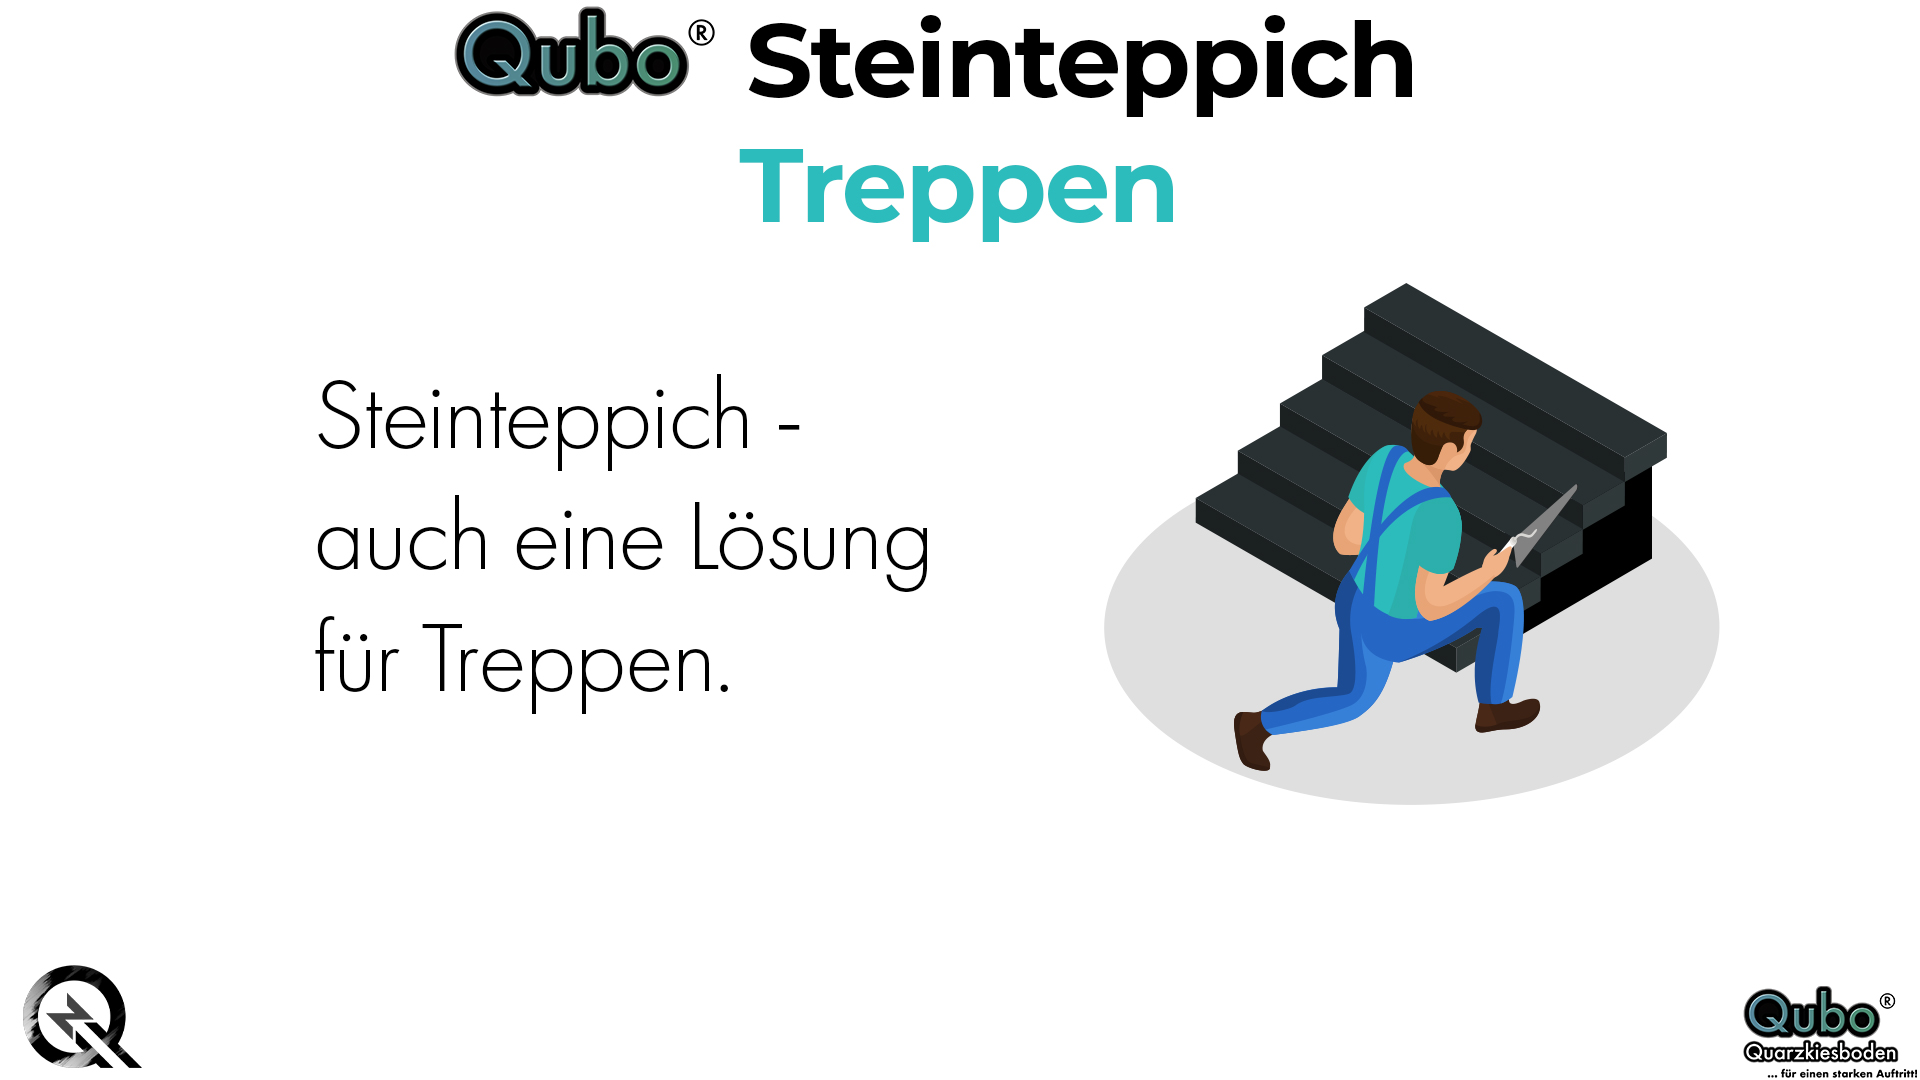 Qubo Steinteppich Treppen